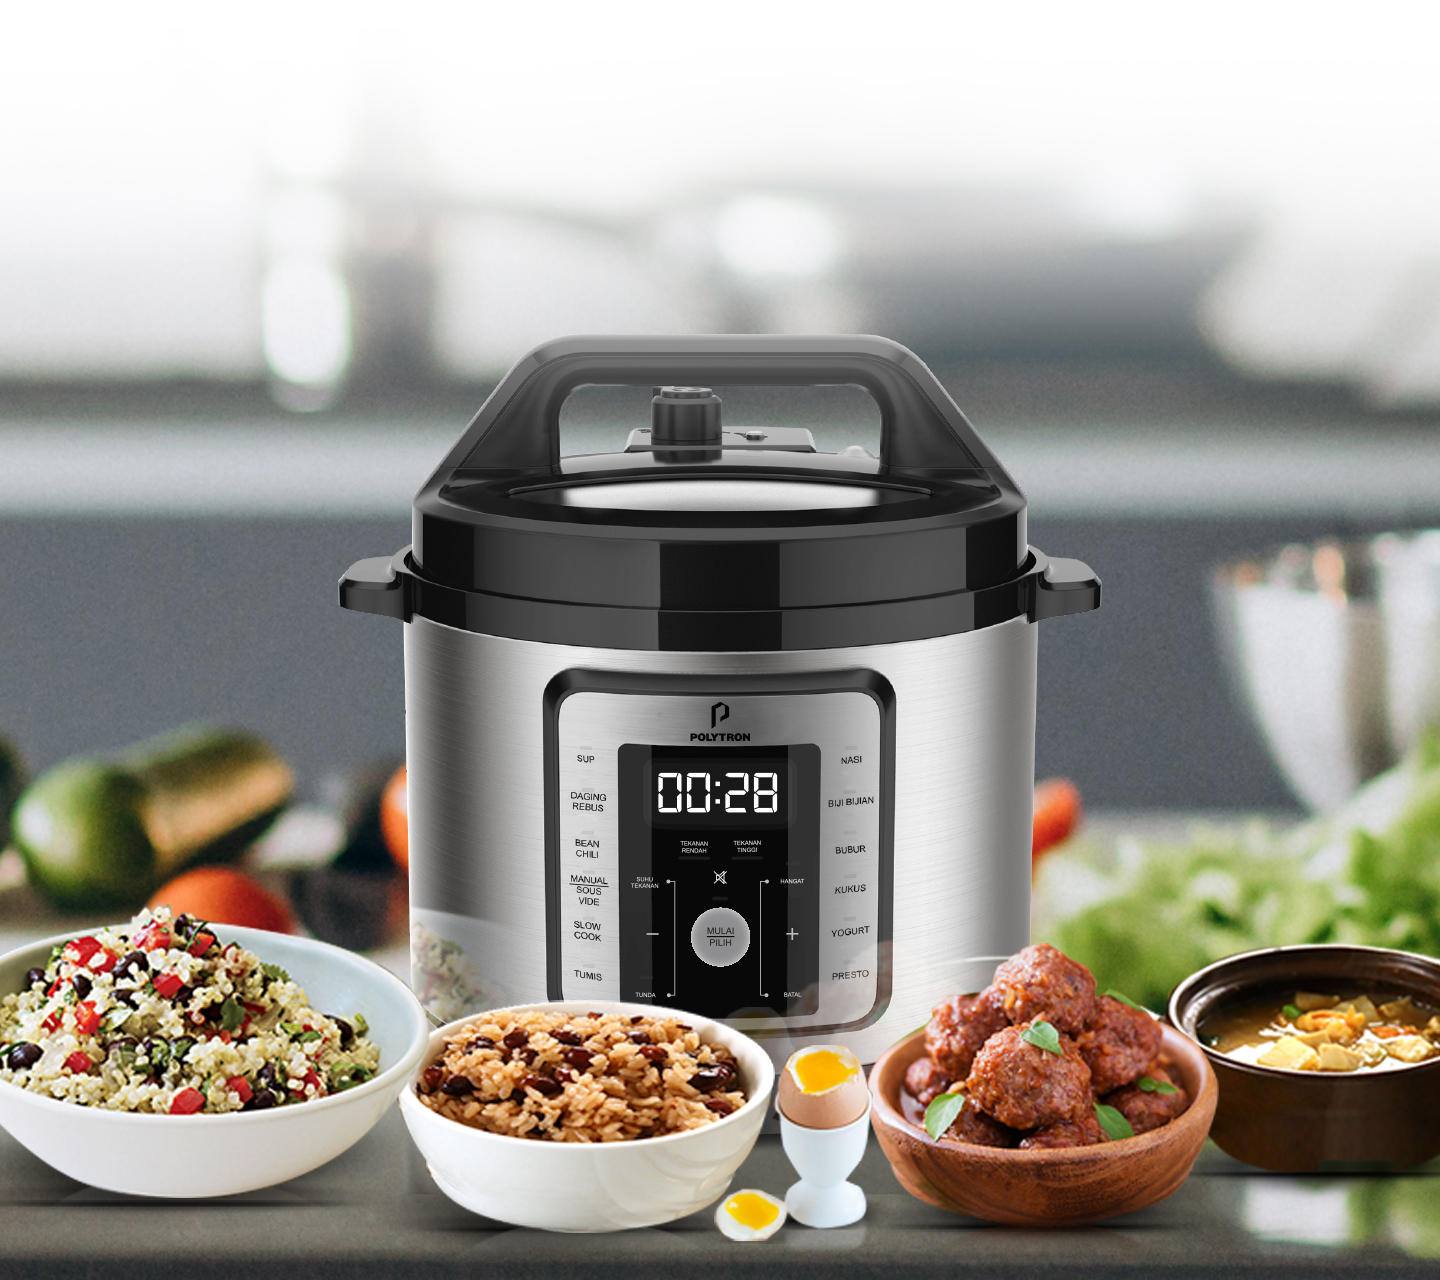 Harga Panci Elektrik terbaik untuk memasak mutli cooker dalam 1 alat dari slow cooker hingga steamer